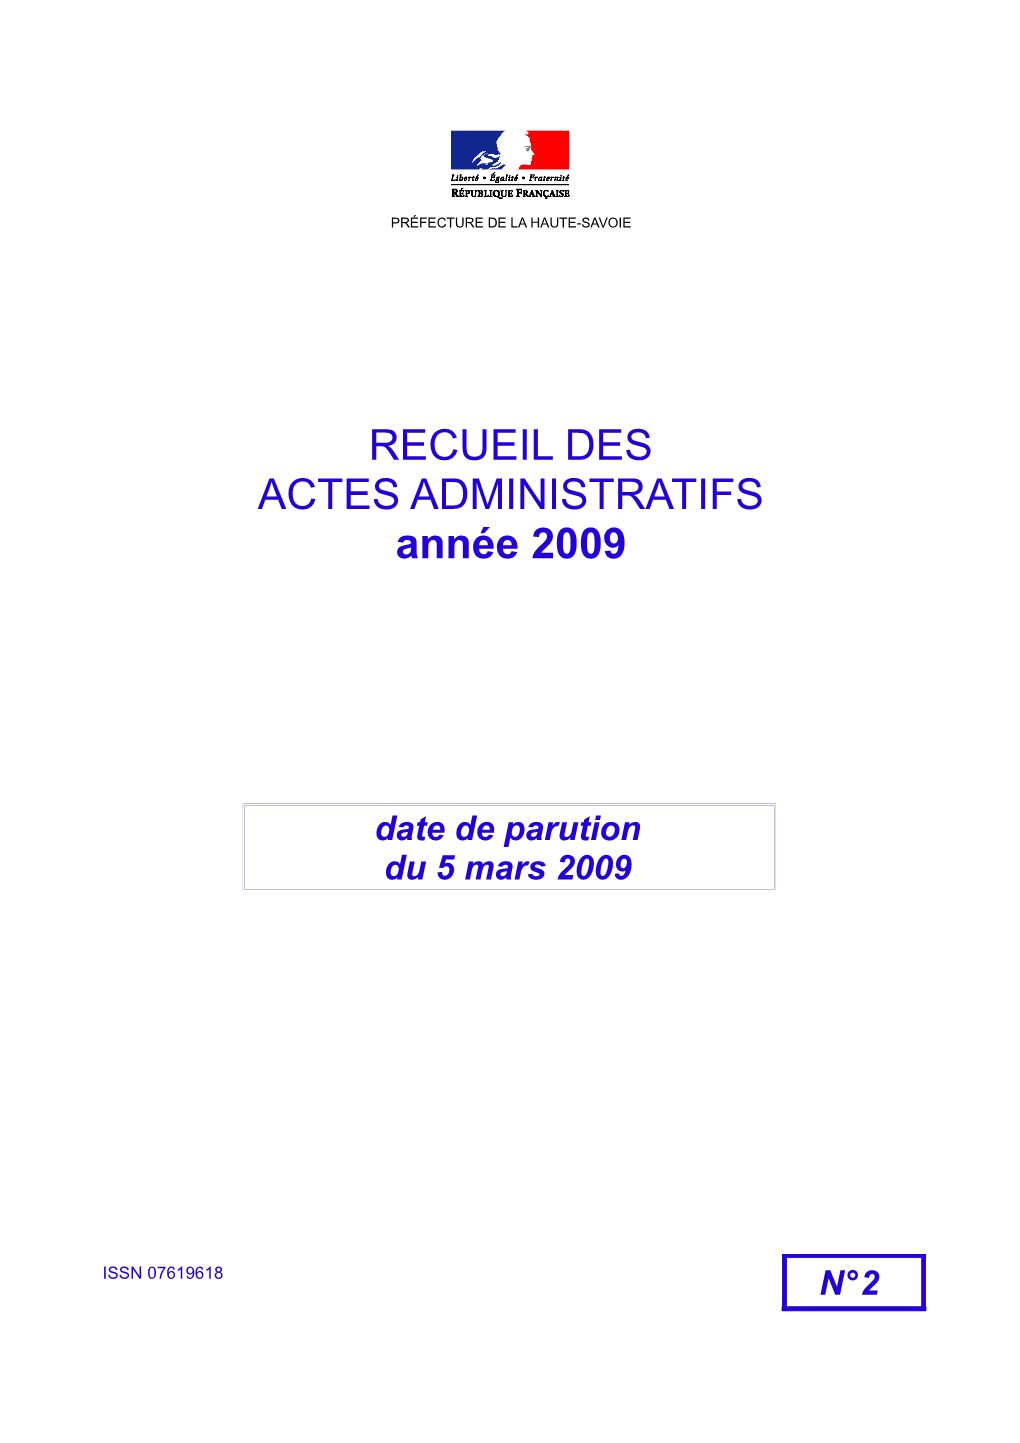 RECUEIL DES ACTES ADMINISTRATIFS Année 2009